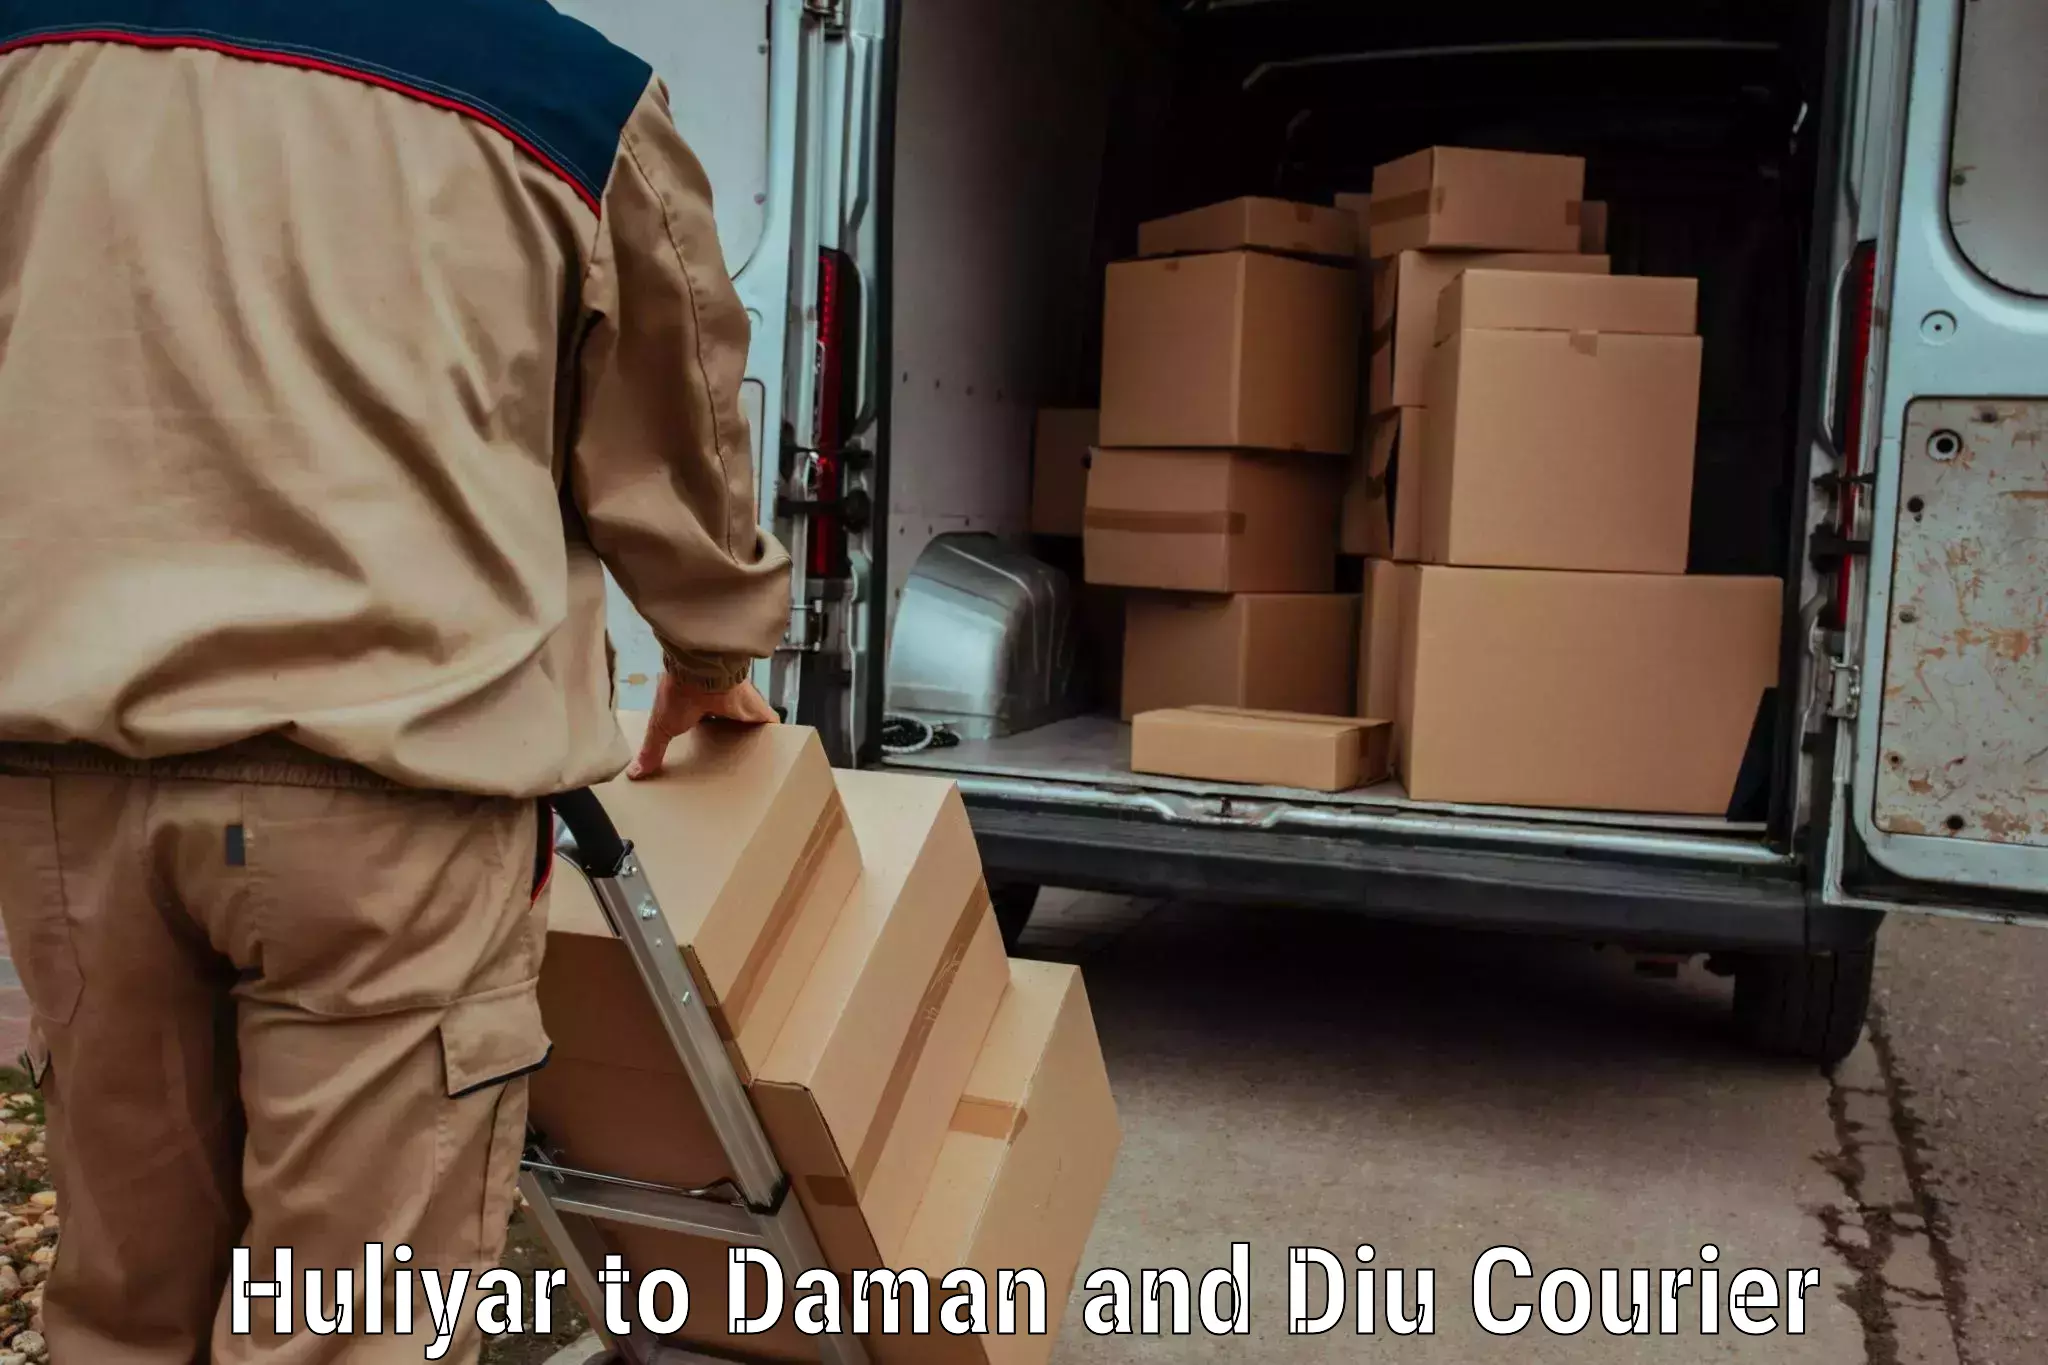 Regular parcel service Huliyar to Diu